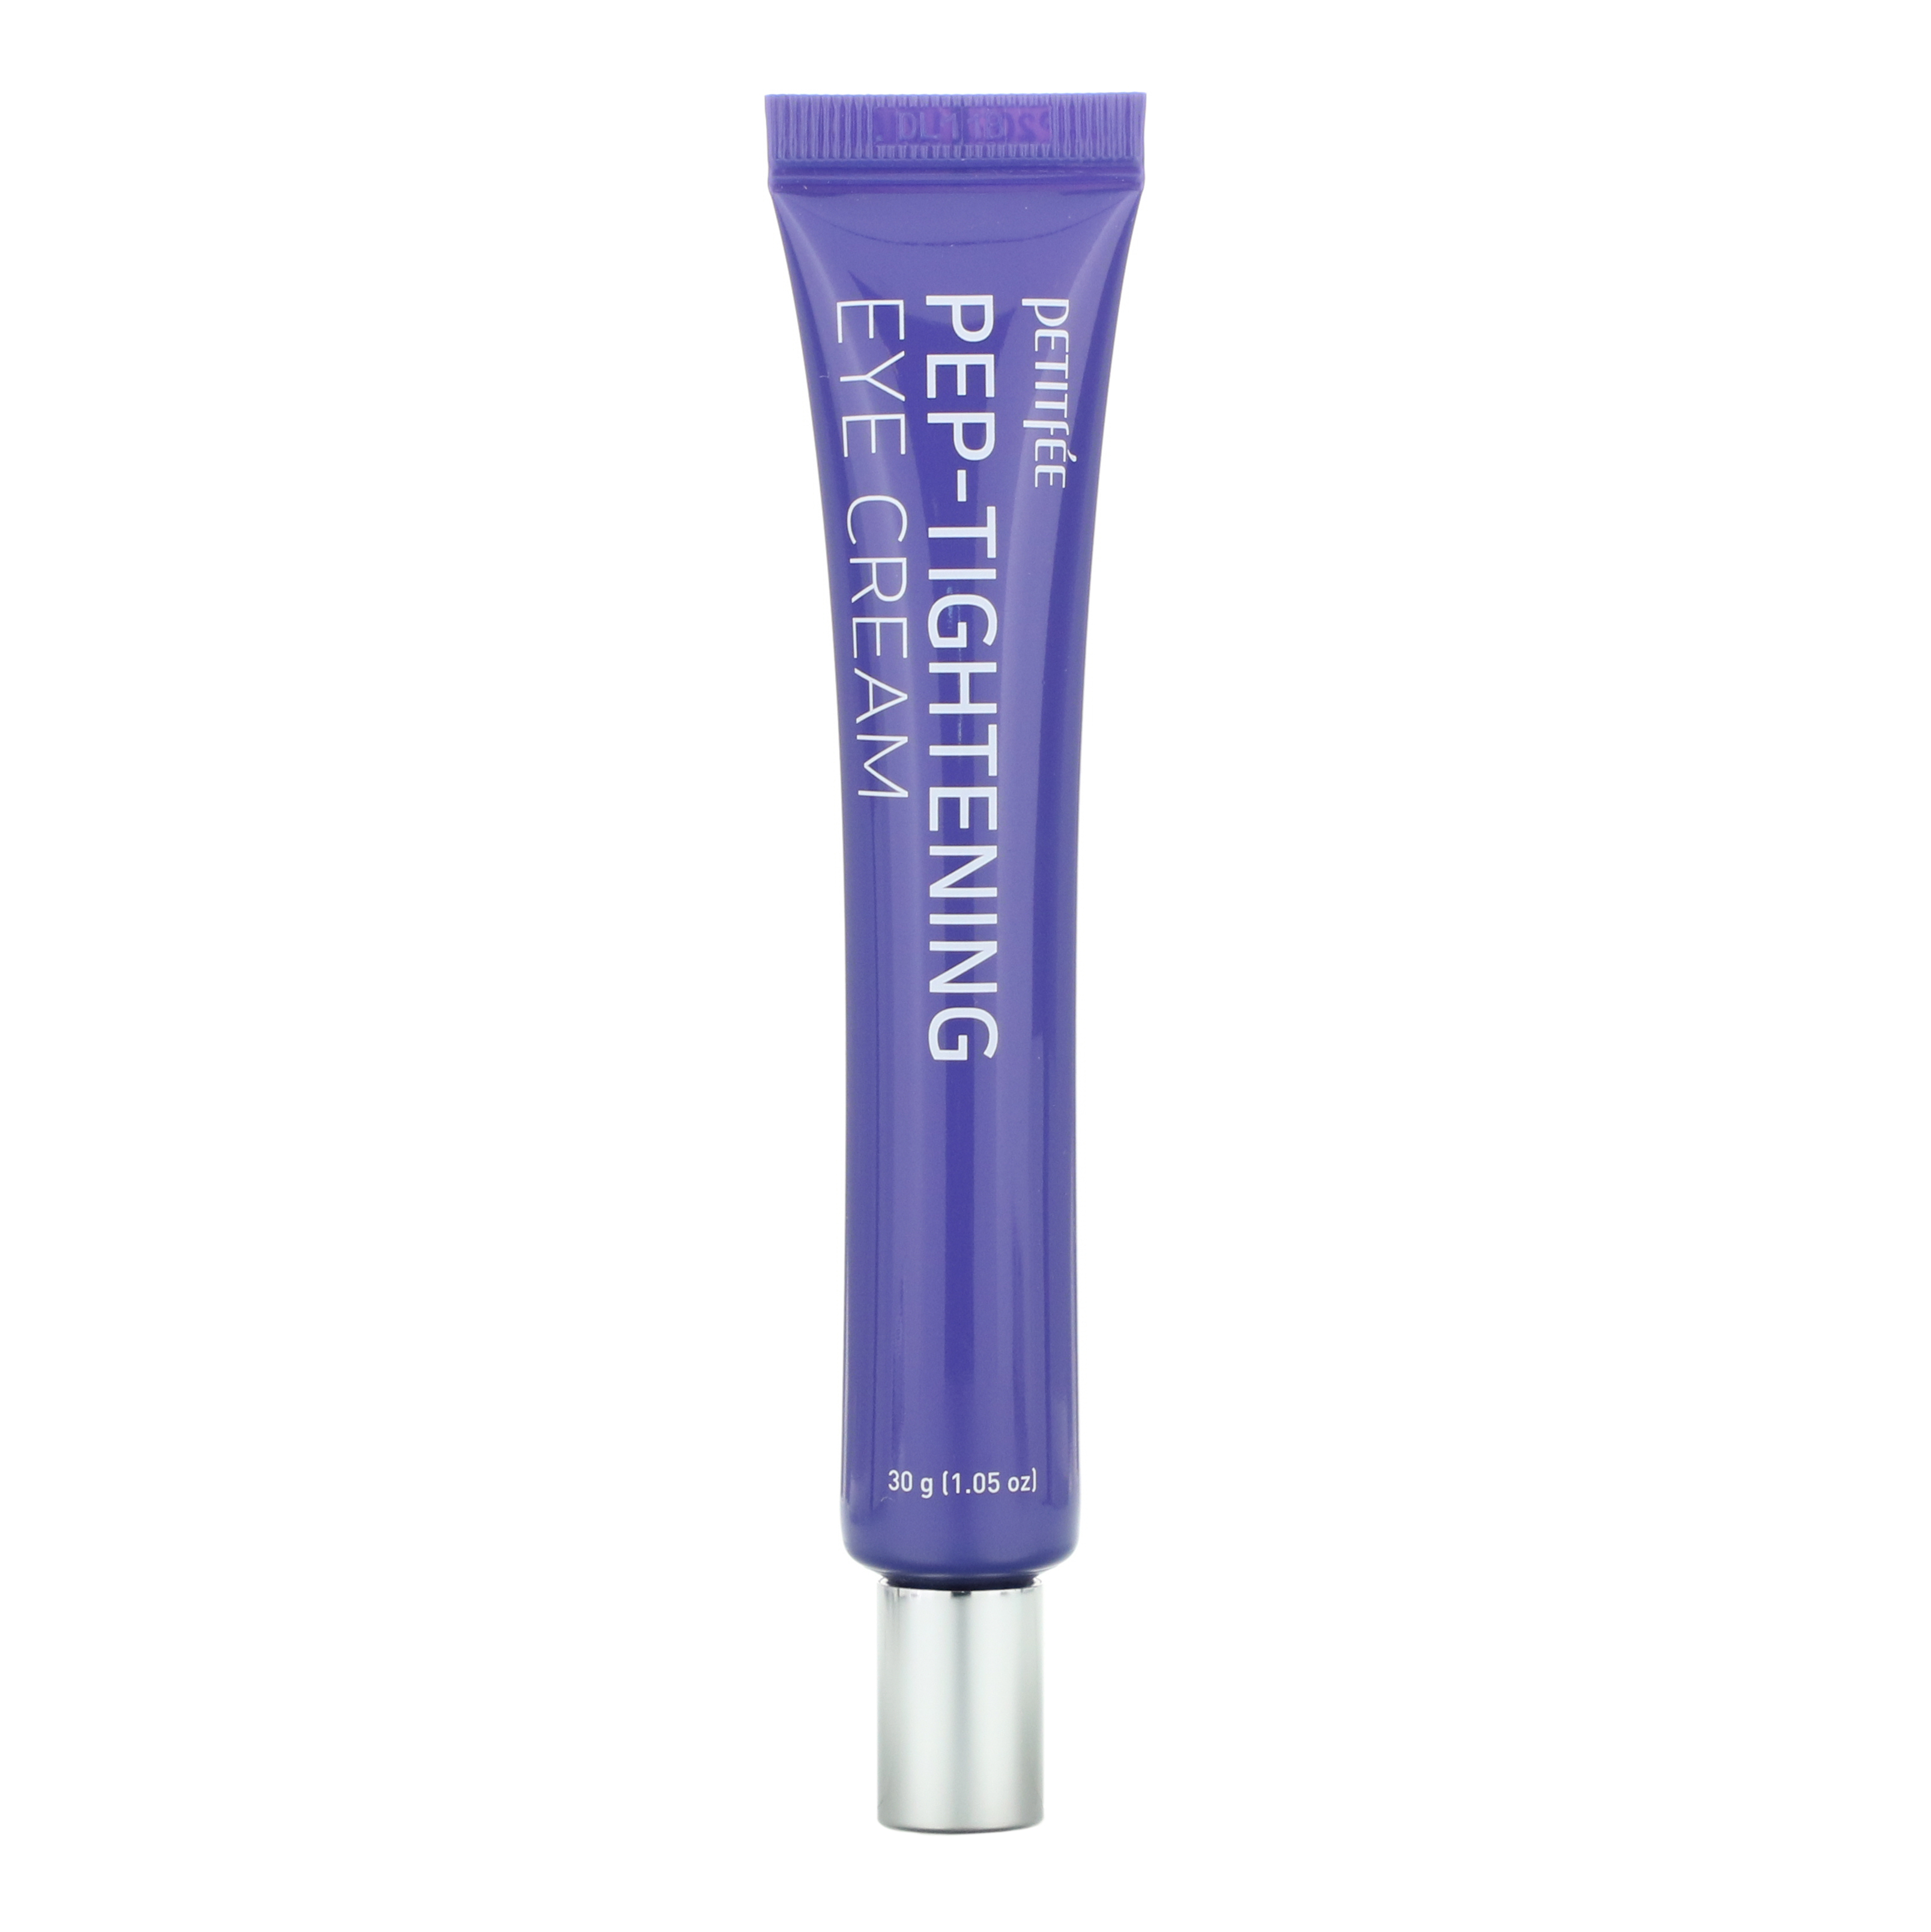 Petitfee, Pep-Tightening Eye Cream, 1.05 oz (30 g) - iHerb